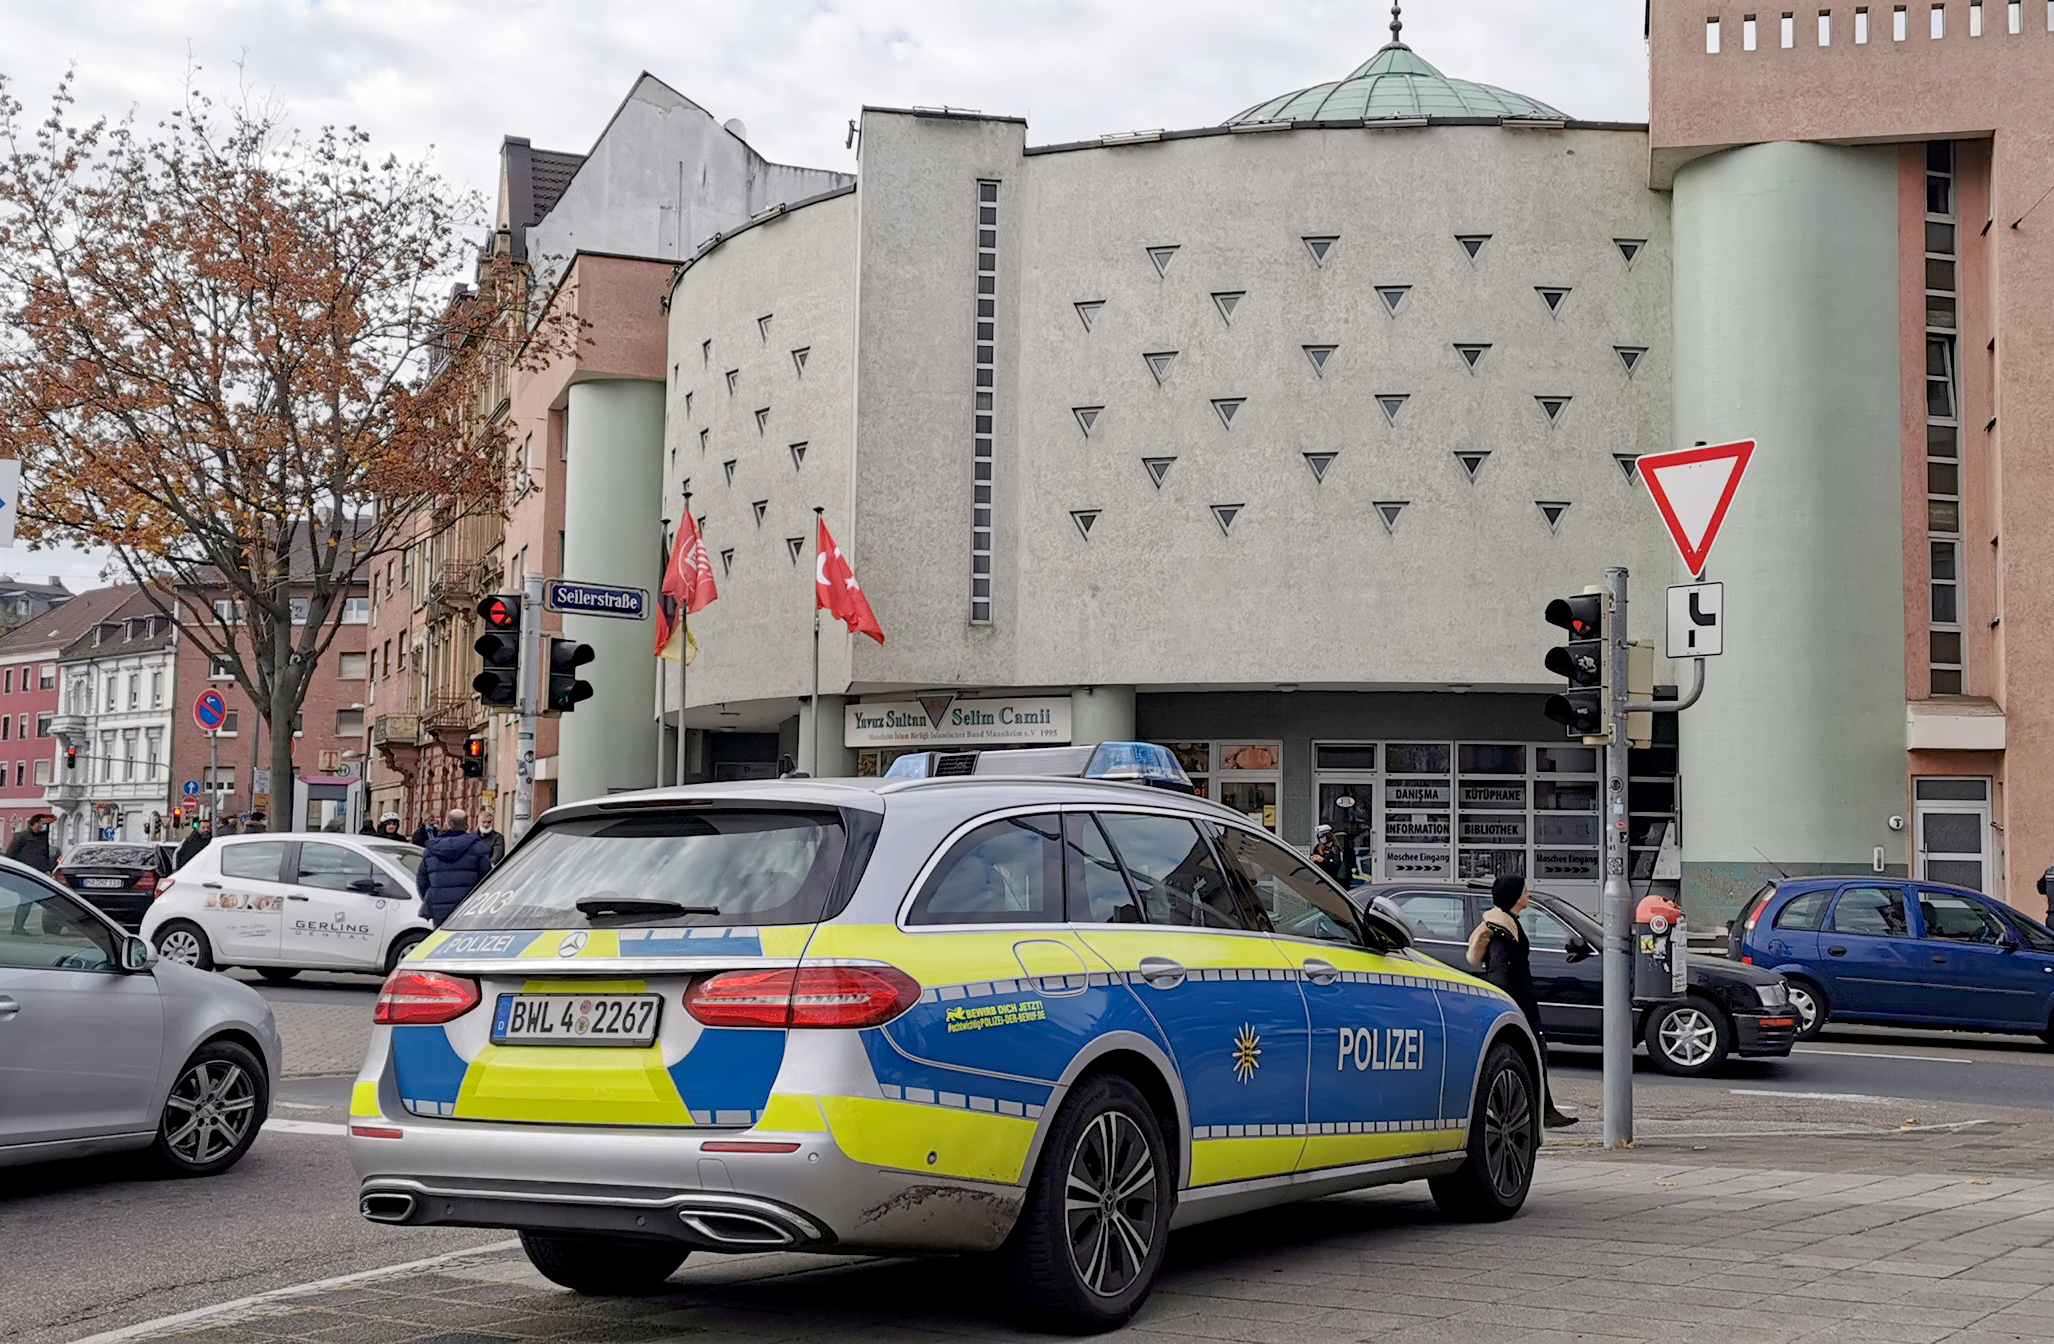 Nach Bombendrohung per Mail durchsucht die Polizei eine Mannheimer Moschee